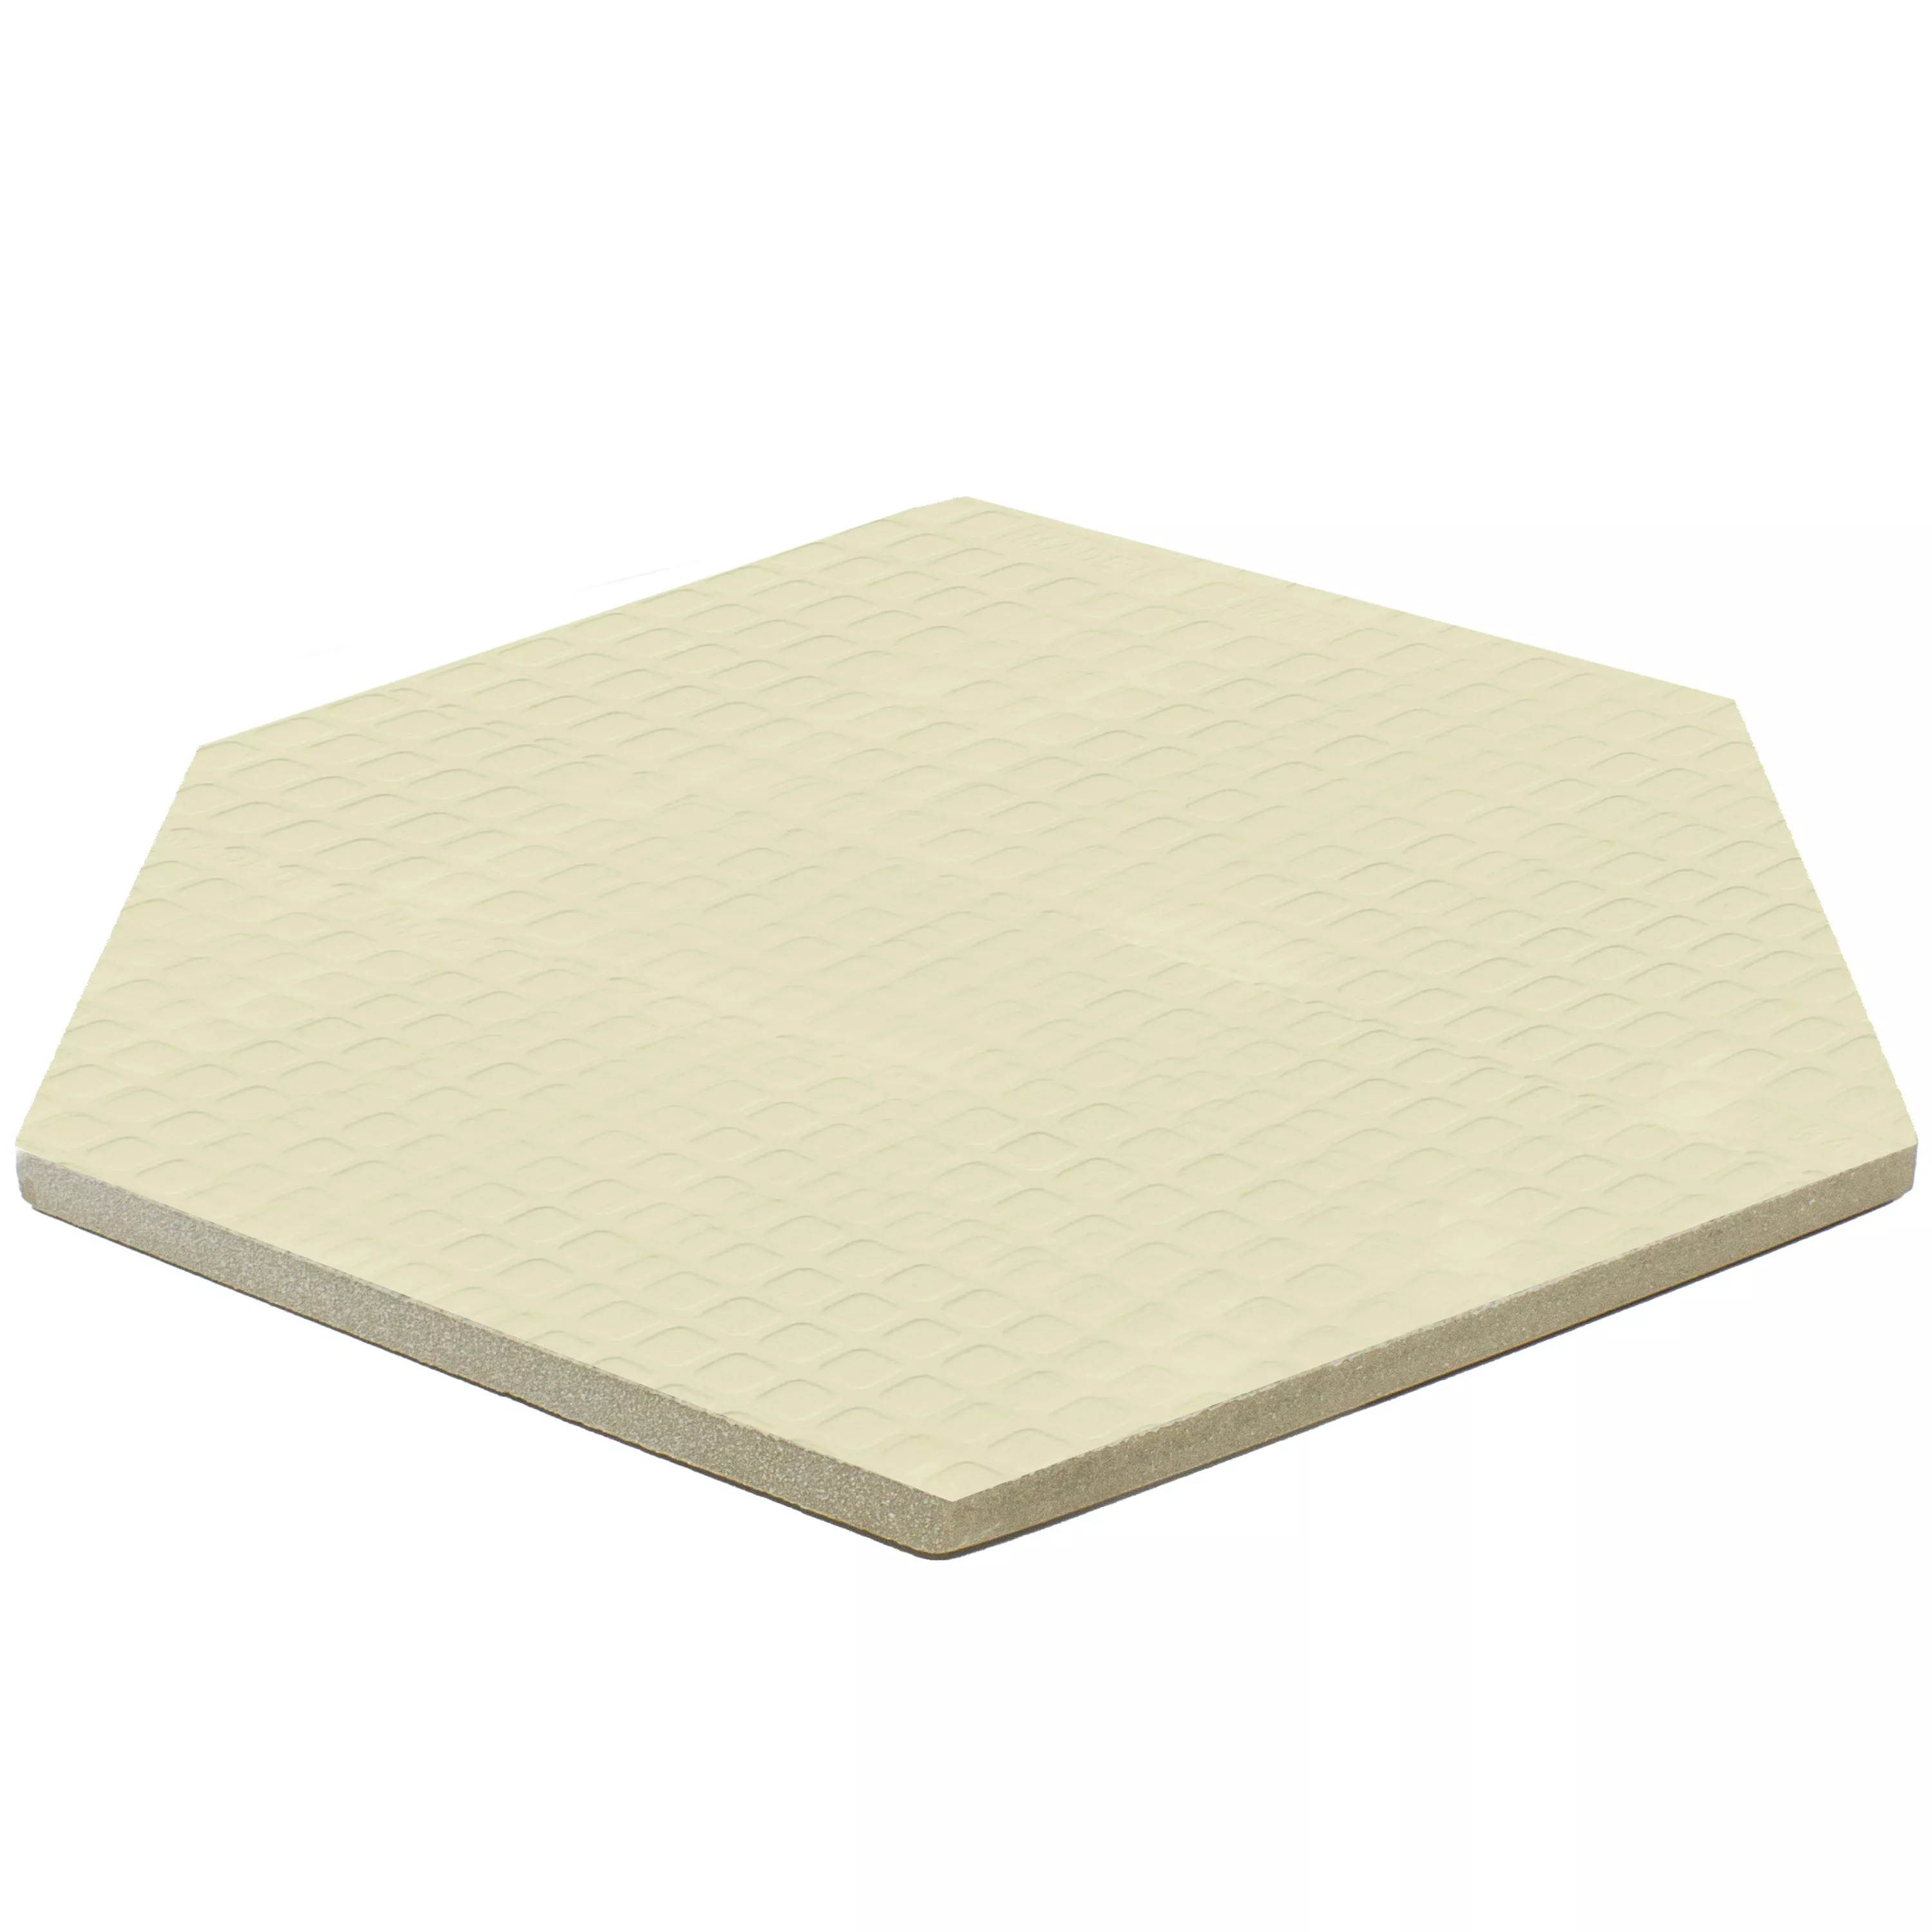 Floor Tiles Arosa Mat Hexagon Olive Green 17,3x15cm